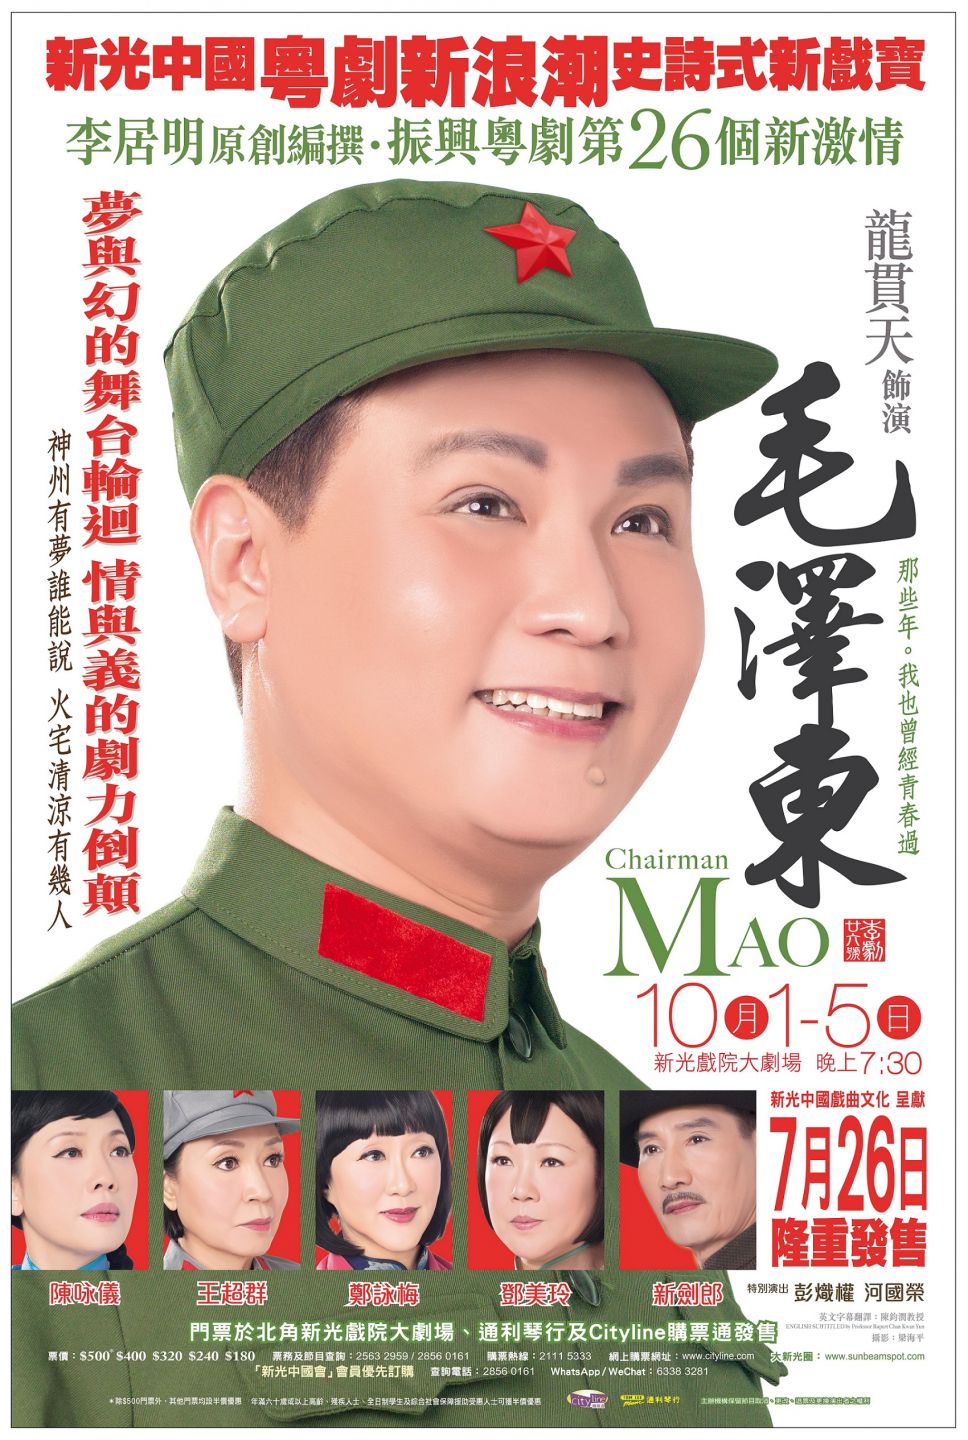 新光戏院剧目《毛泽东》曾数度重演，大受欢迎。